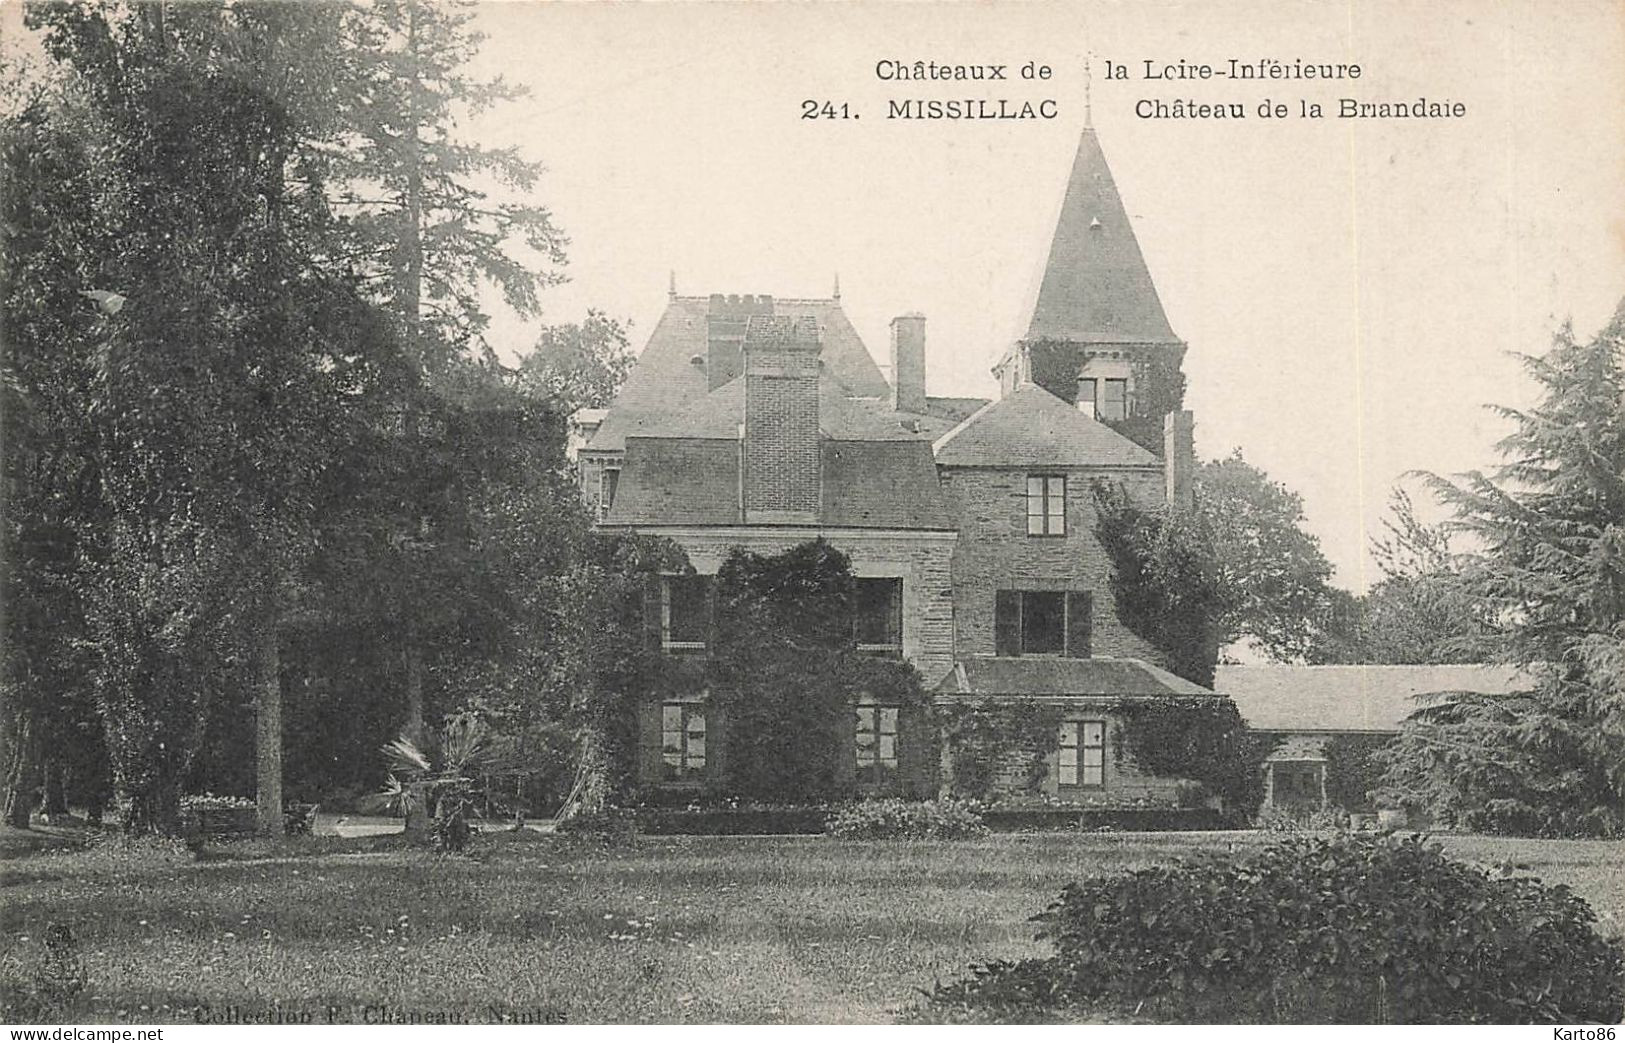 Missillac * Château De La Briandaie * Châteaux De La Loire Inférieure N°241 - Missillac